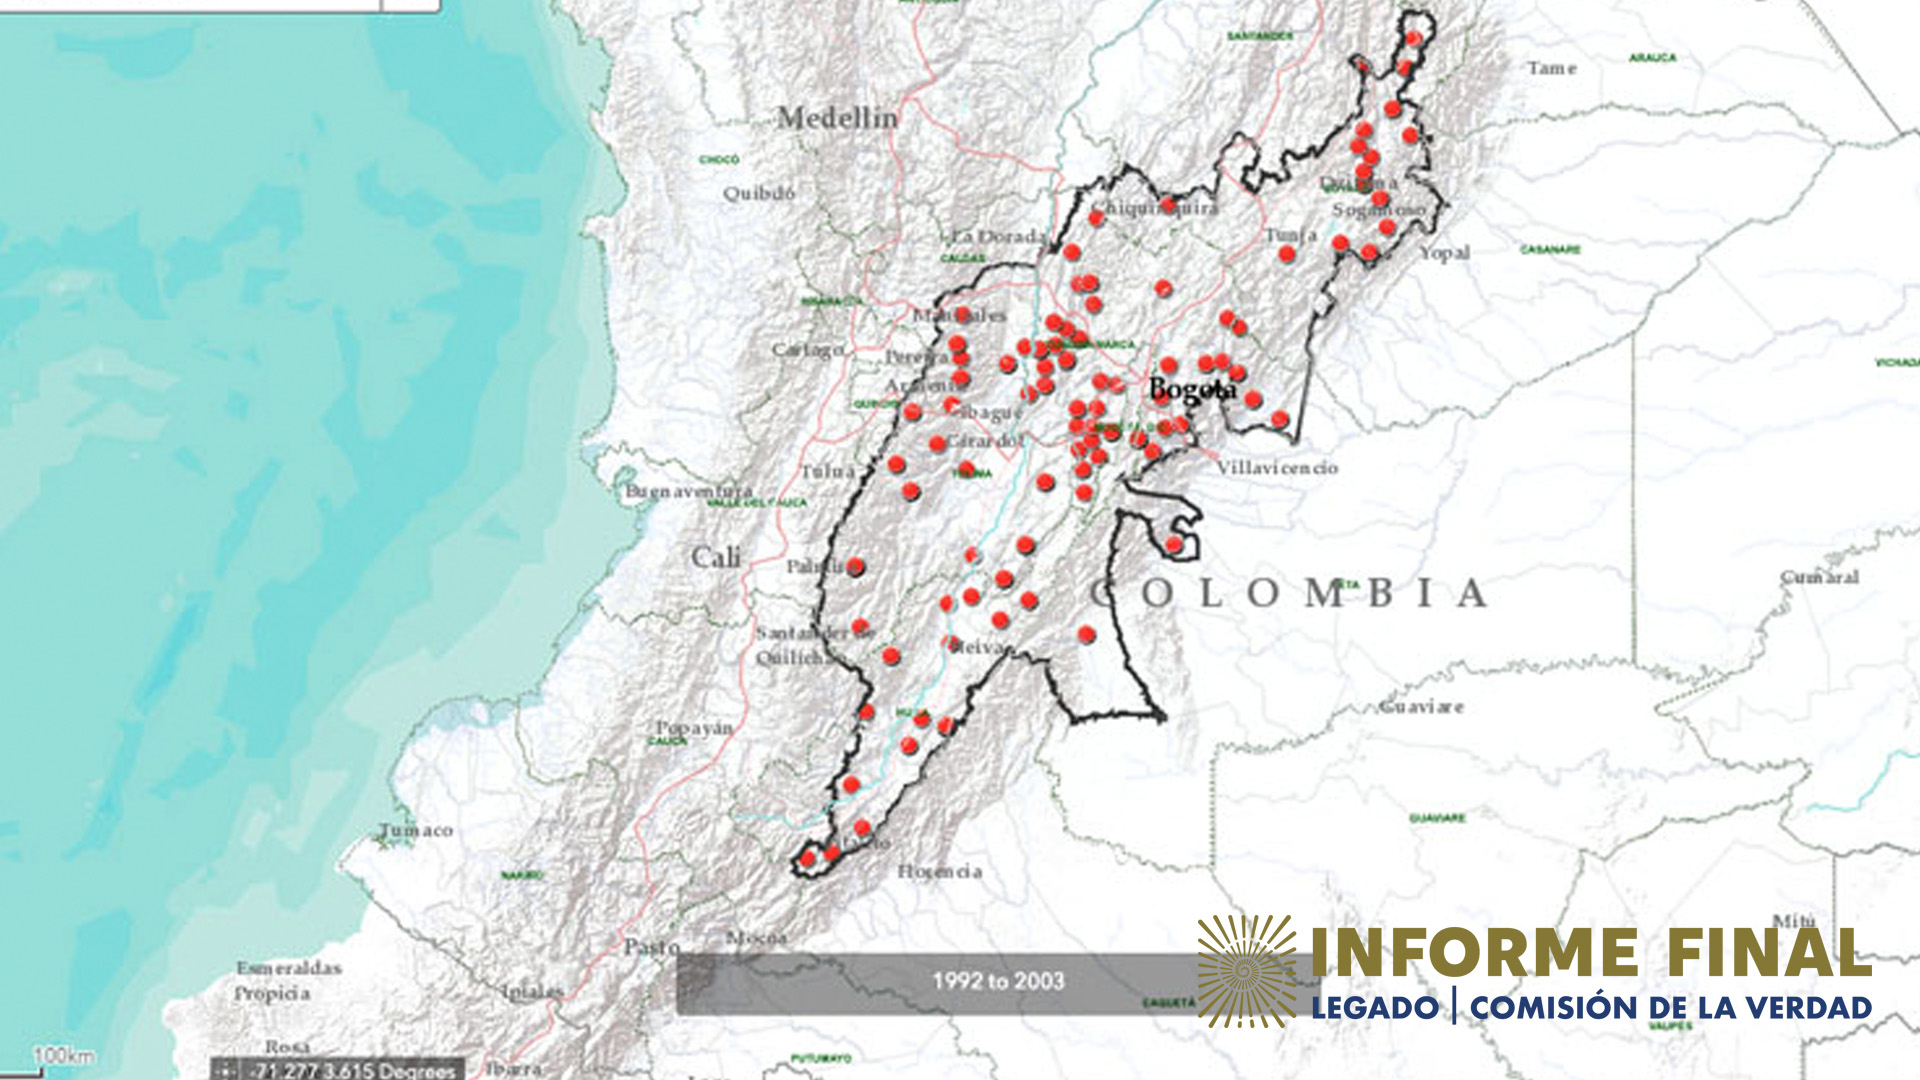 Mapa de la región Centro de Colombia con señalamientos de incursiones de las FARC